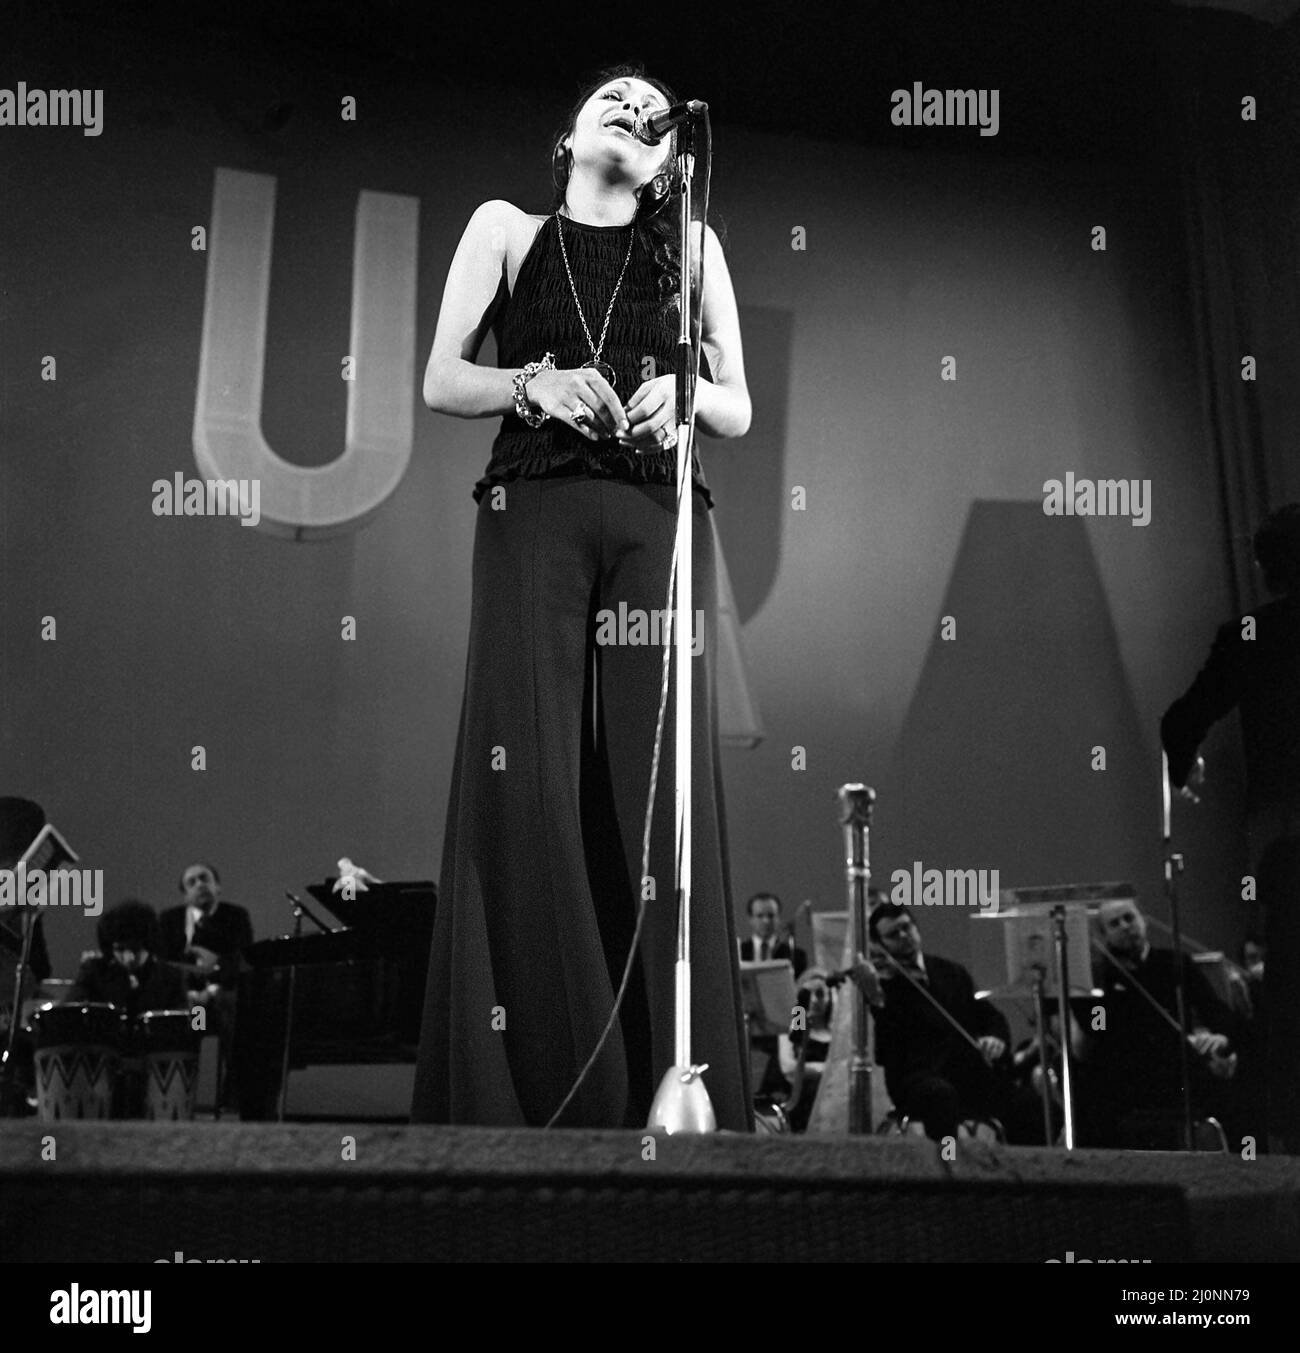 La chanteuse de jazz roumaine aura Urziceanu, env. 1975 Banque D'Images